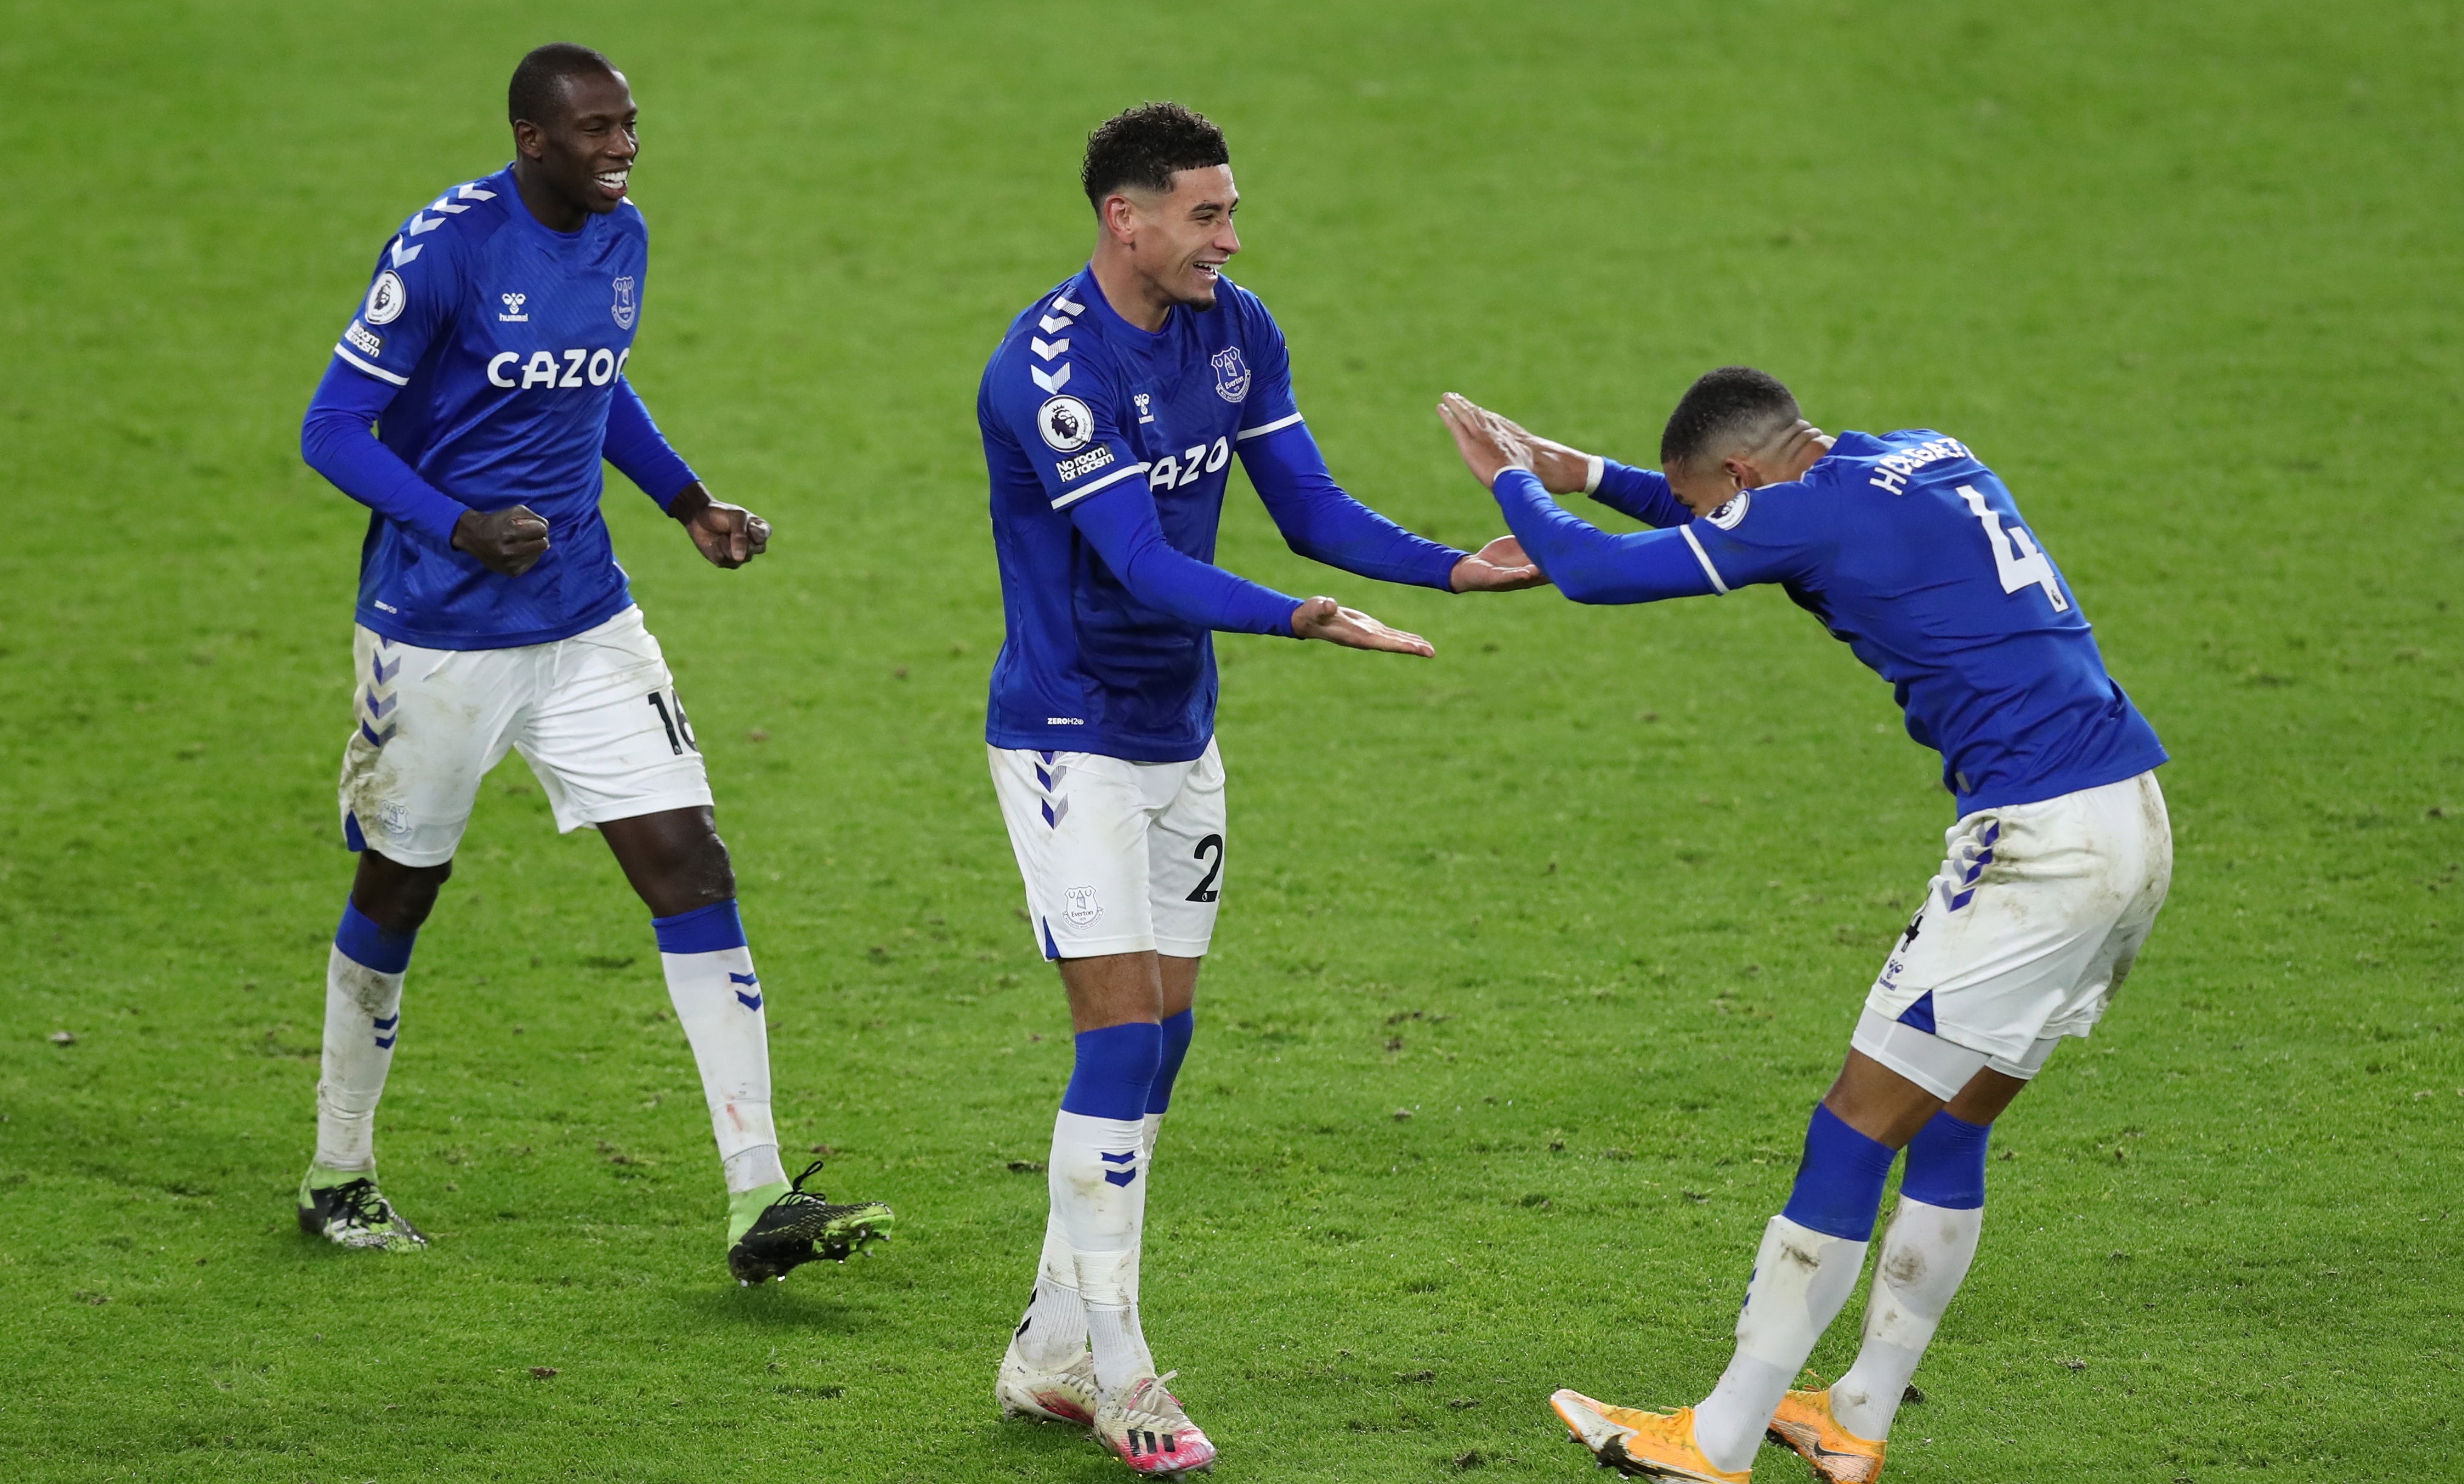 El Everton ganó su encuentro de visita ante el Sheffield y se puso segundo en la tabla de posiciones de la Premier League. (Foto Prensa Libre: EFE)